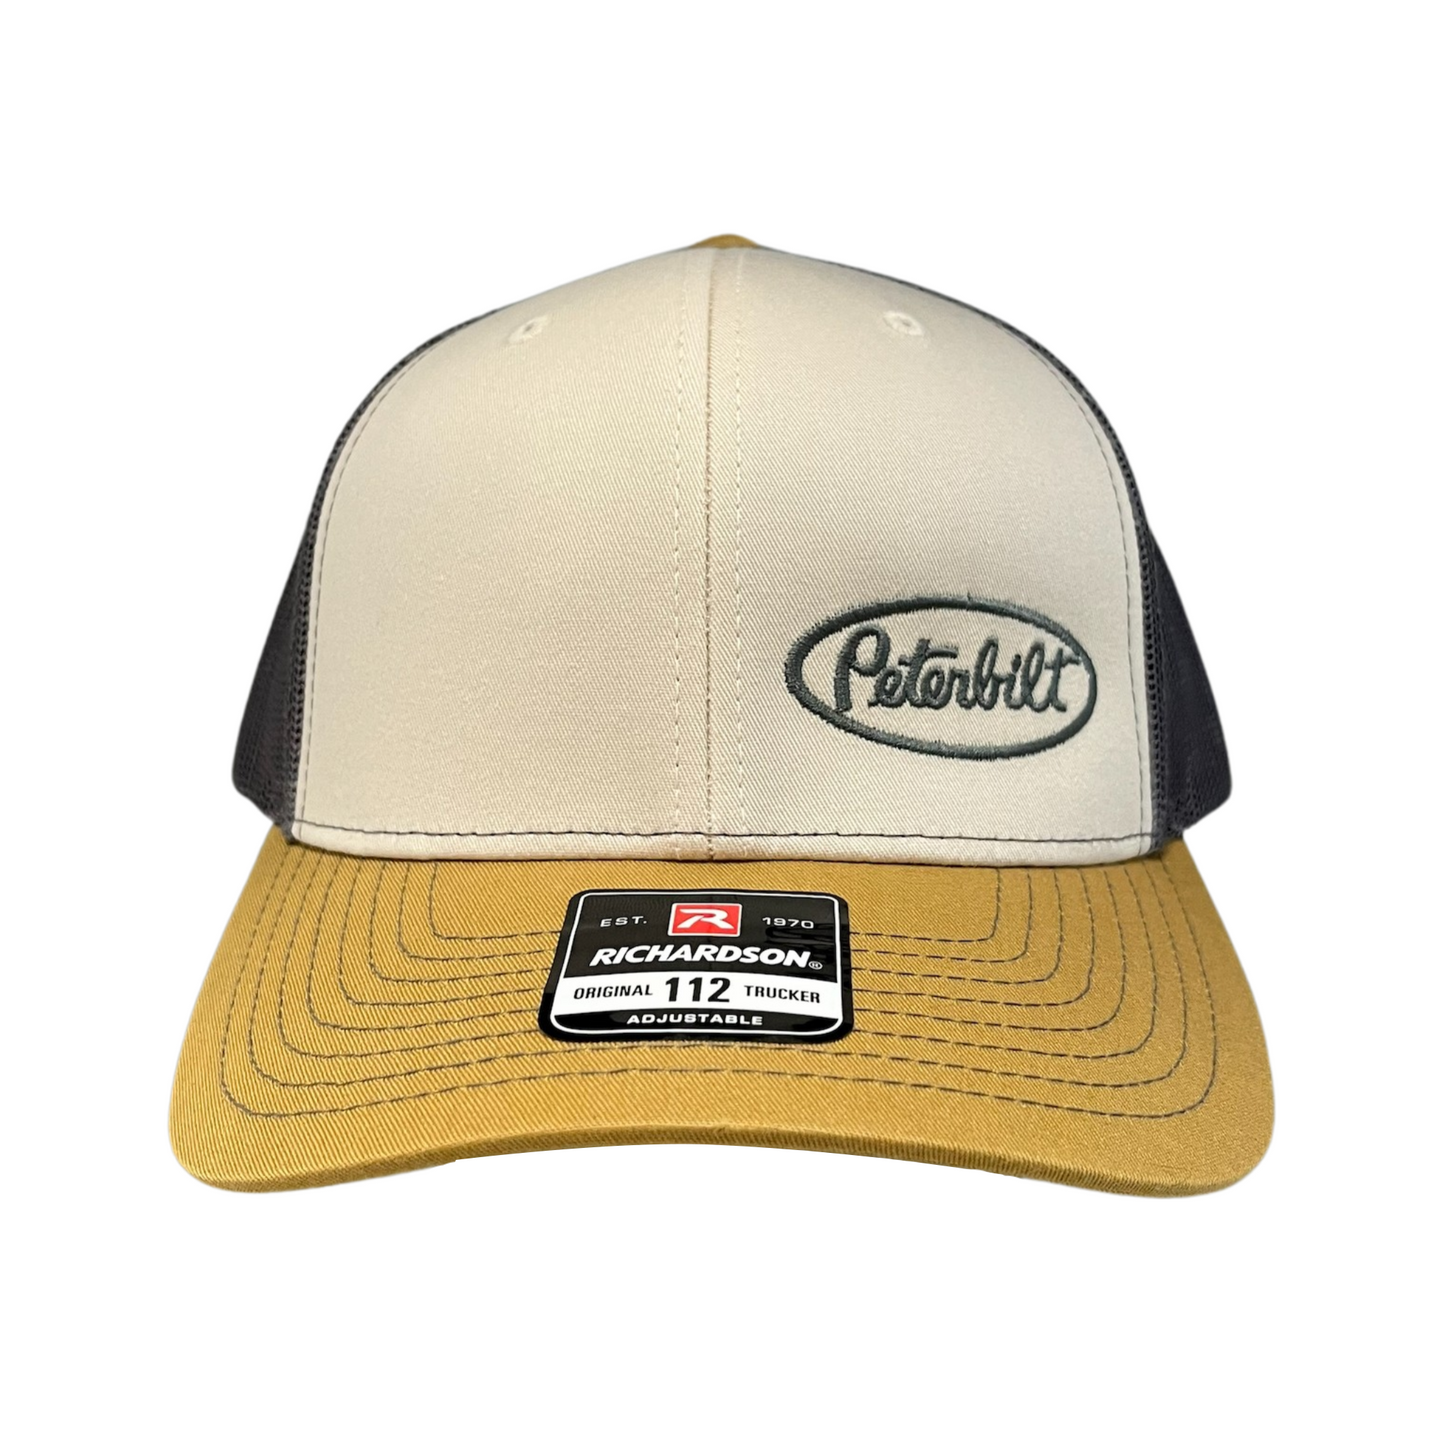 Classic Cream, Gray, and Mustard Yellow Peterbilt logo Trucker Cap